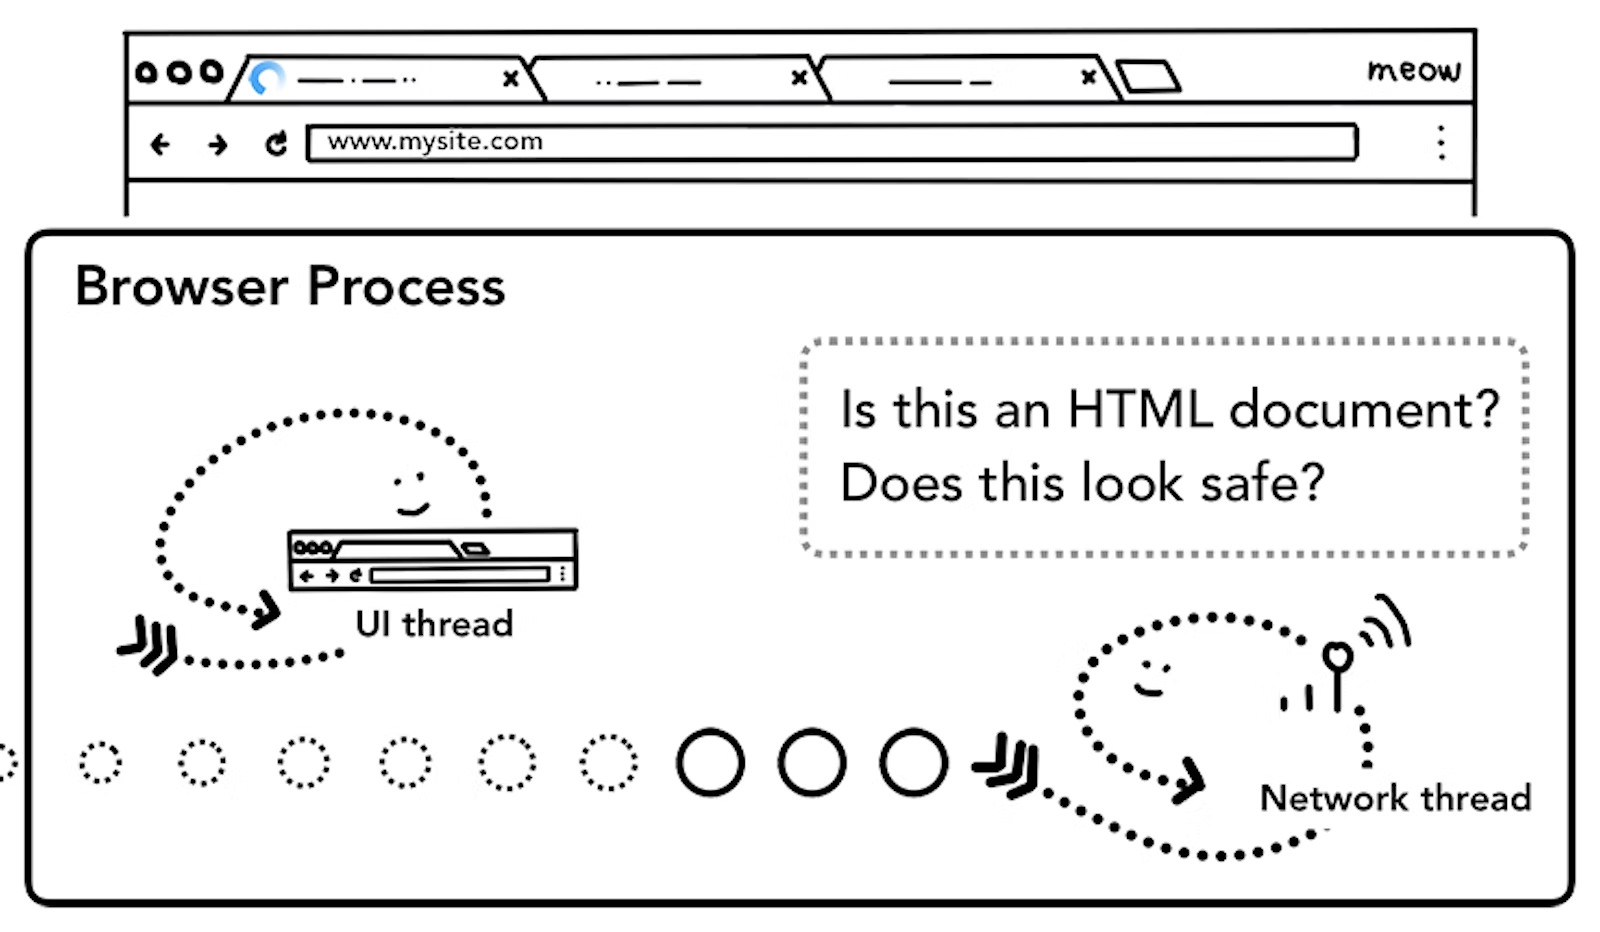 그림 4. 안전한 사이트에서 응답 받은 HTML 데이터인지 확인하는 네트워크 쓰레드